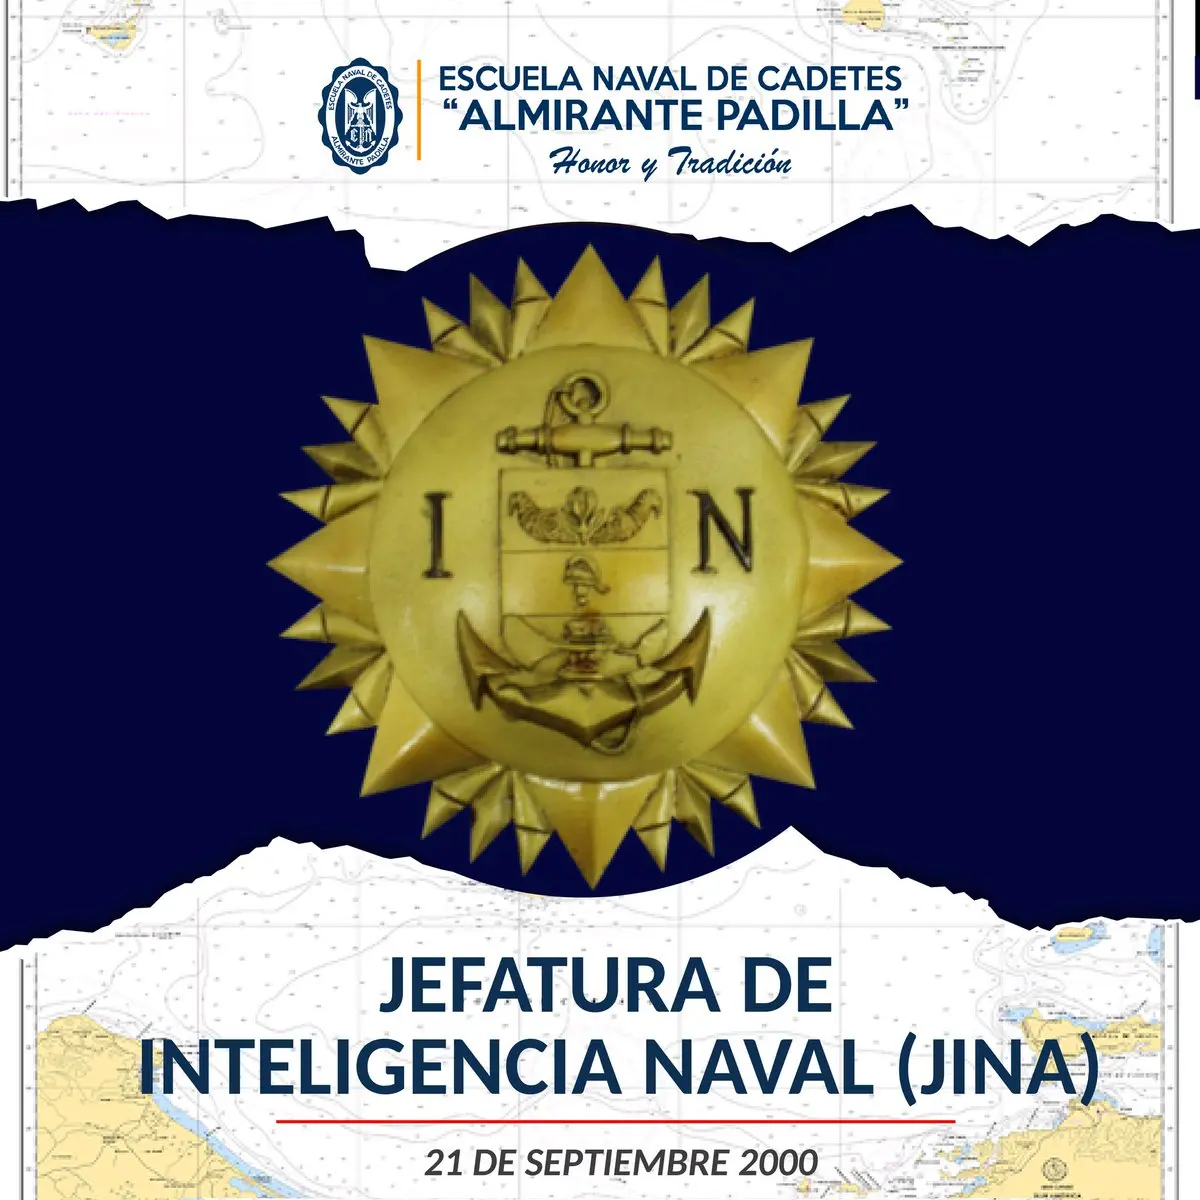 inteligencia naval colombiana - Qué hace la inteligencia naval